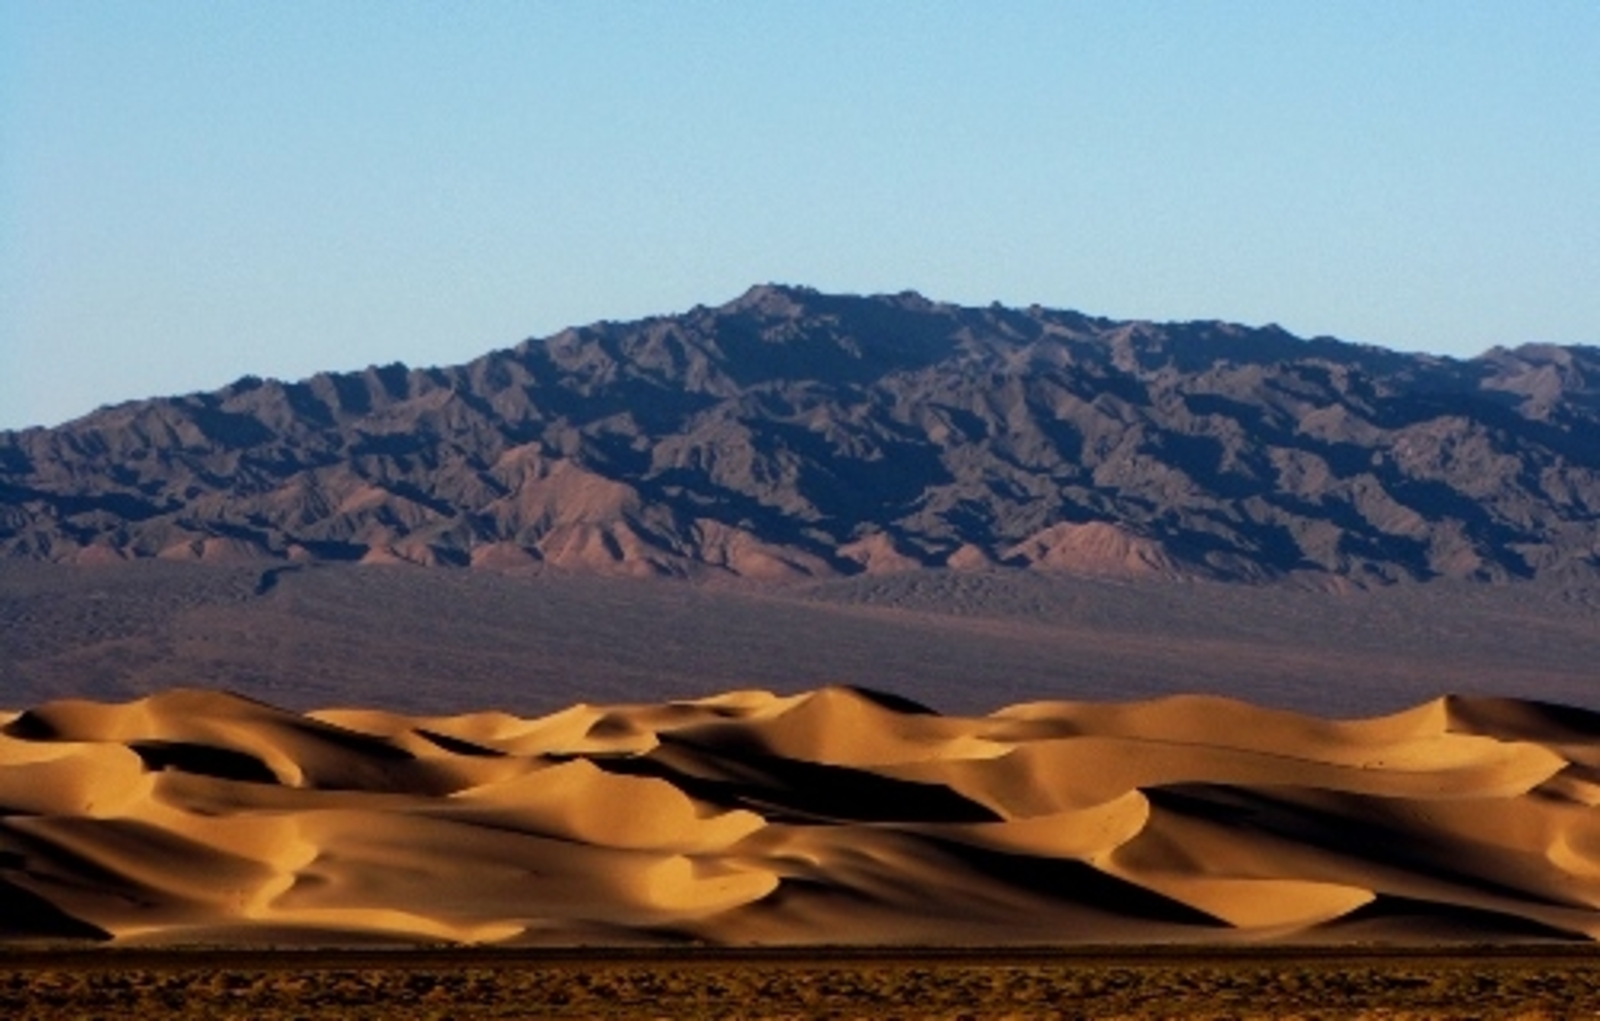 Gobi Desert in Mongolia